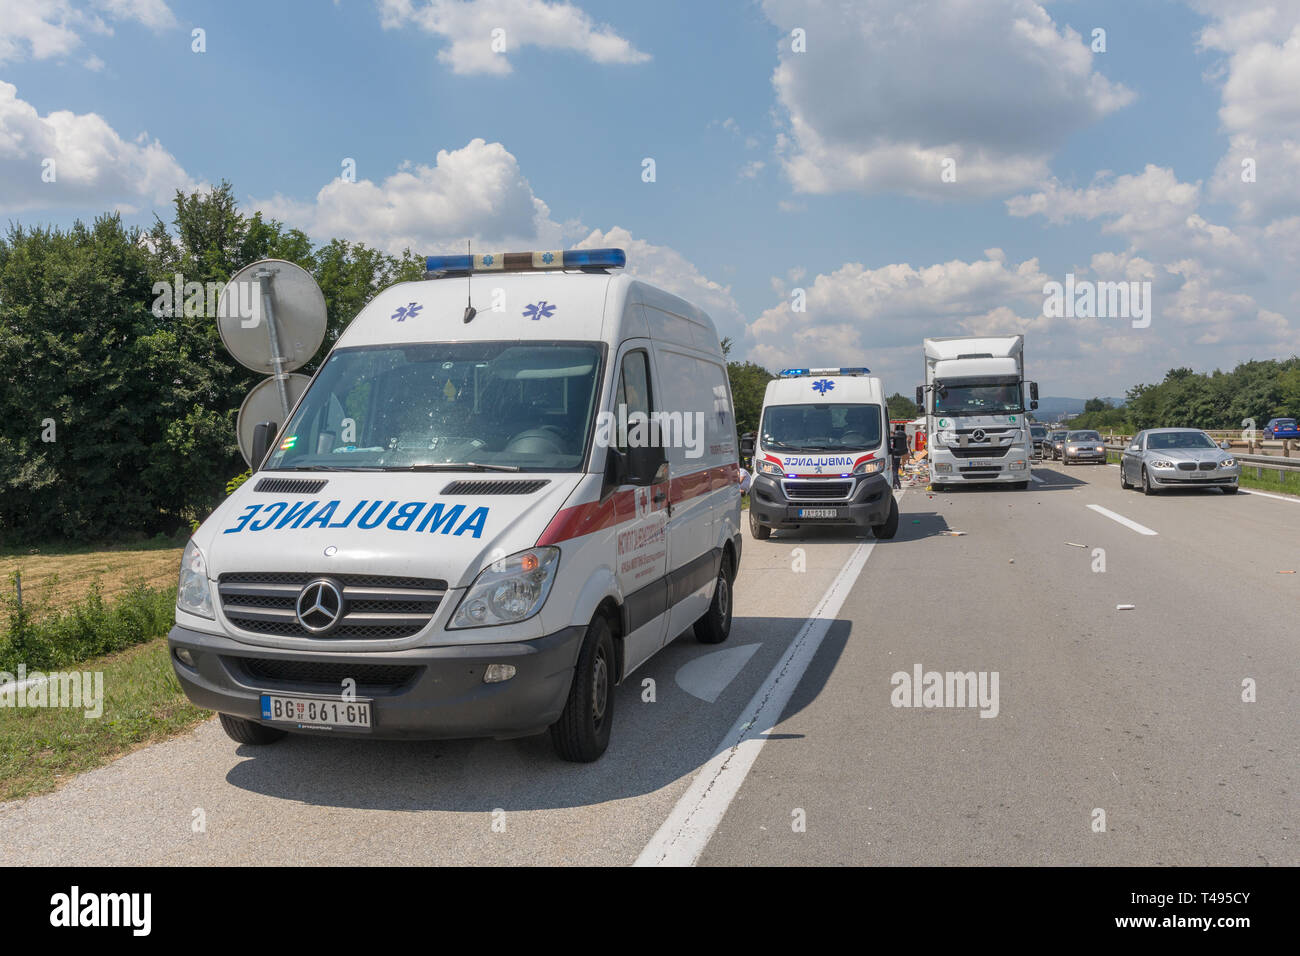 Jagodina, Serbien - Juli 14, 2018: Zwei Rettungswagen Einsatzfahrzeuge an Landstraße Verkehrsunfall bei Jagodina, Serbien. Stockfoto